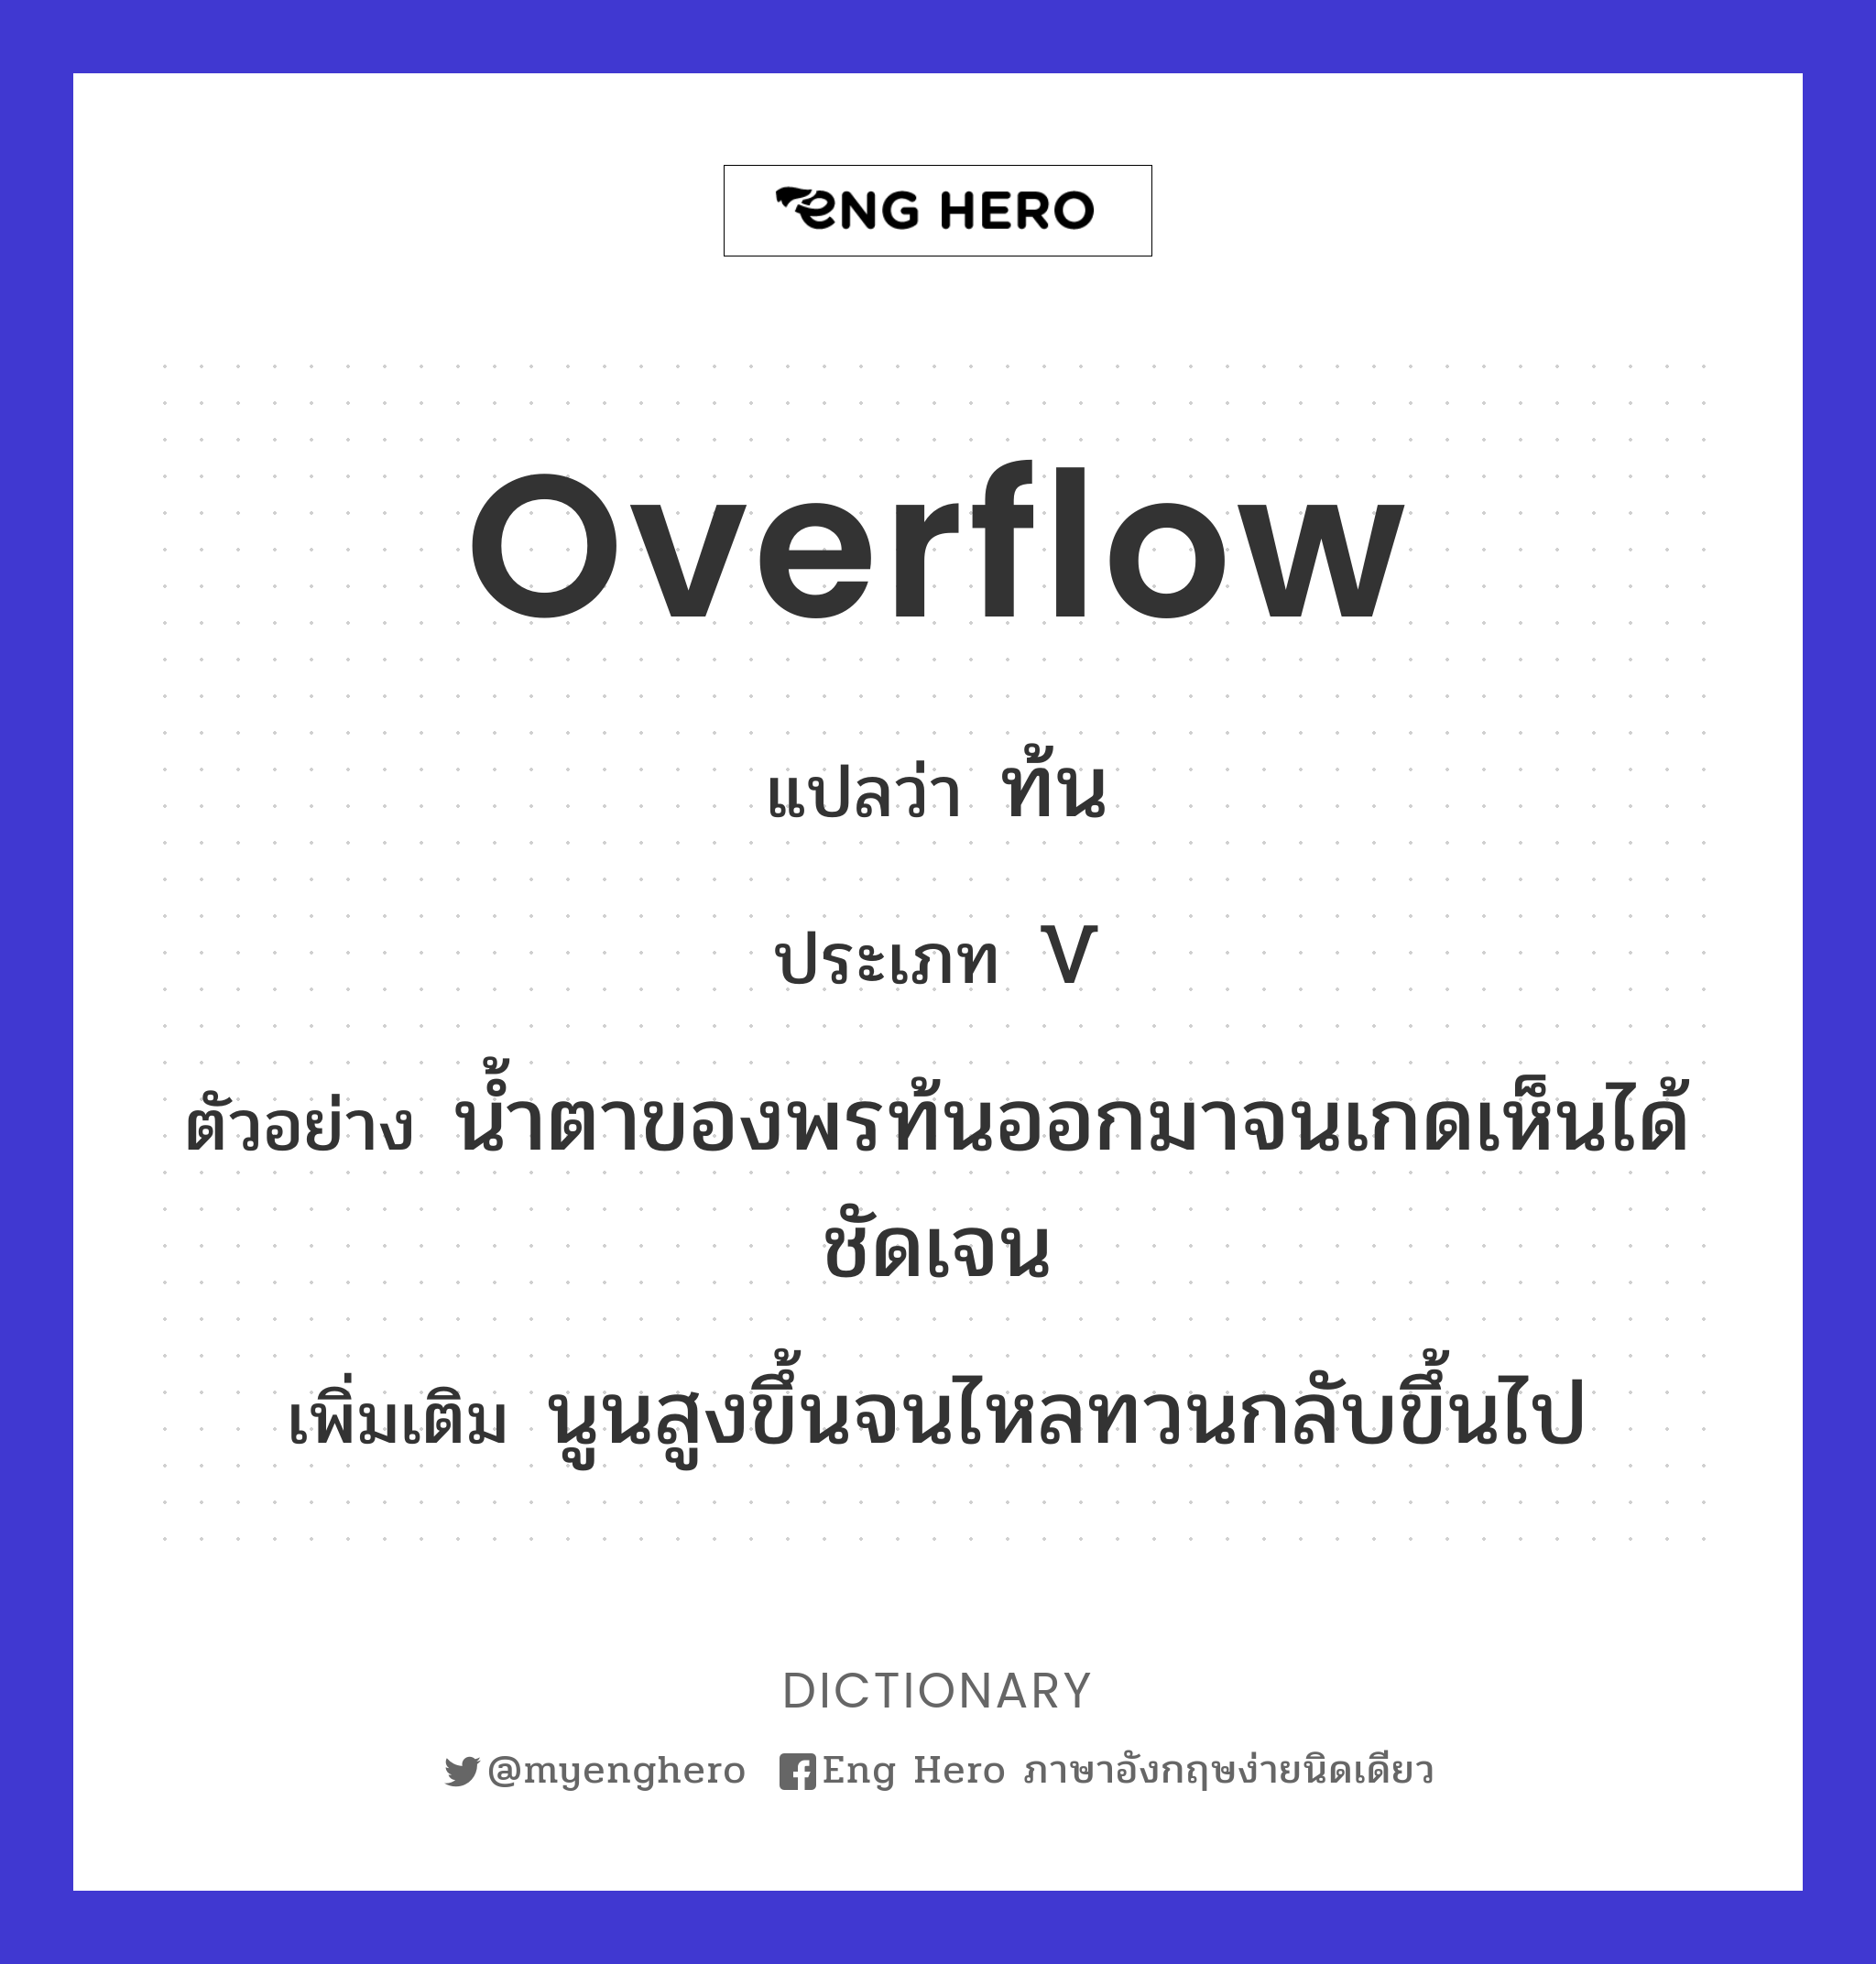 overflow